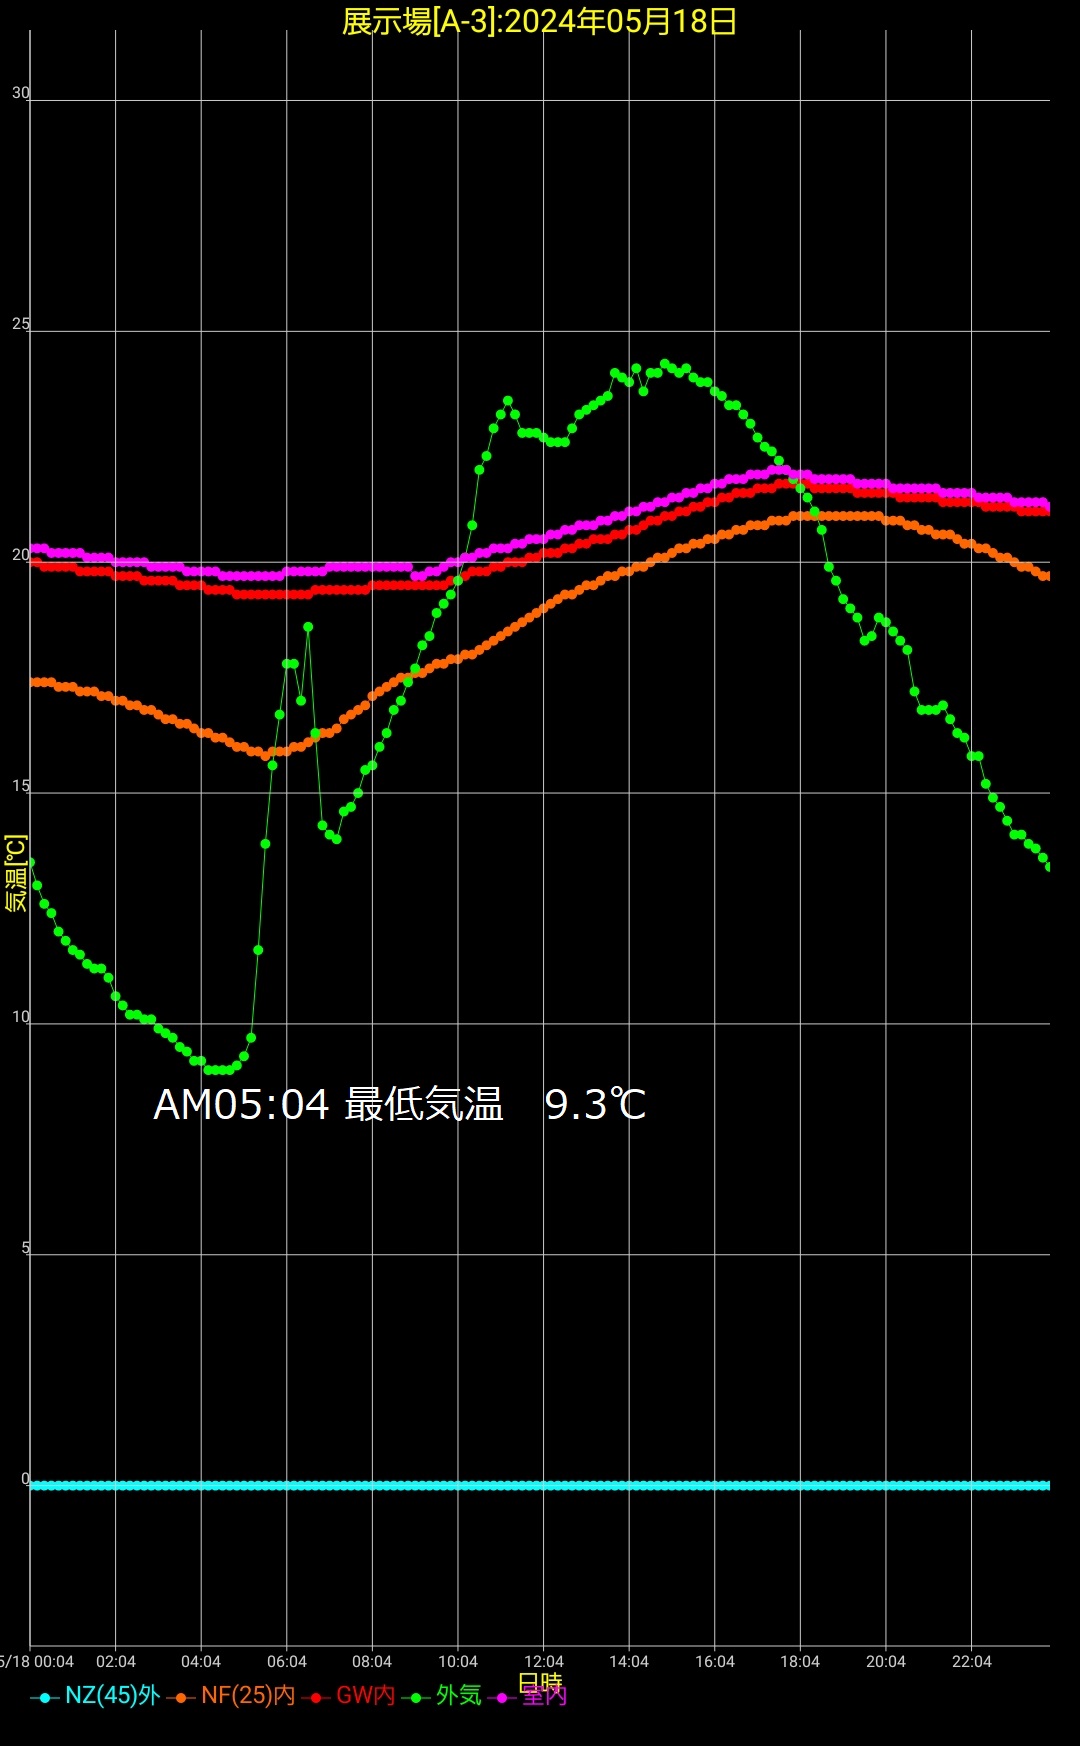 岩手県滝沢5月18日の温度推移の画像